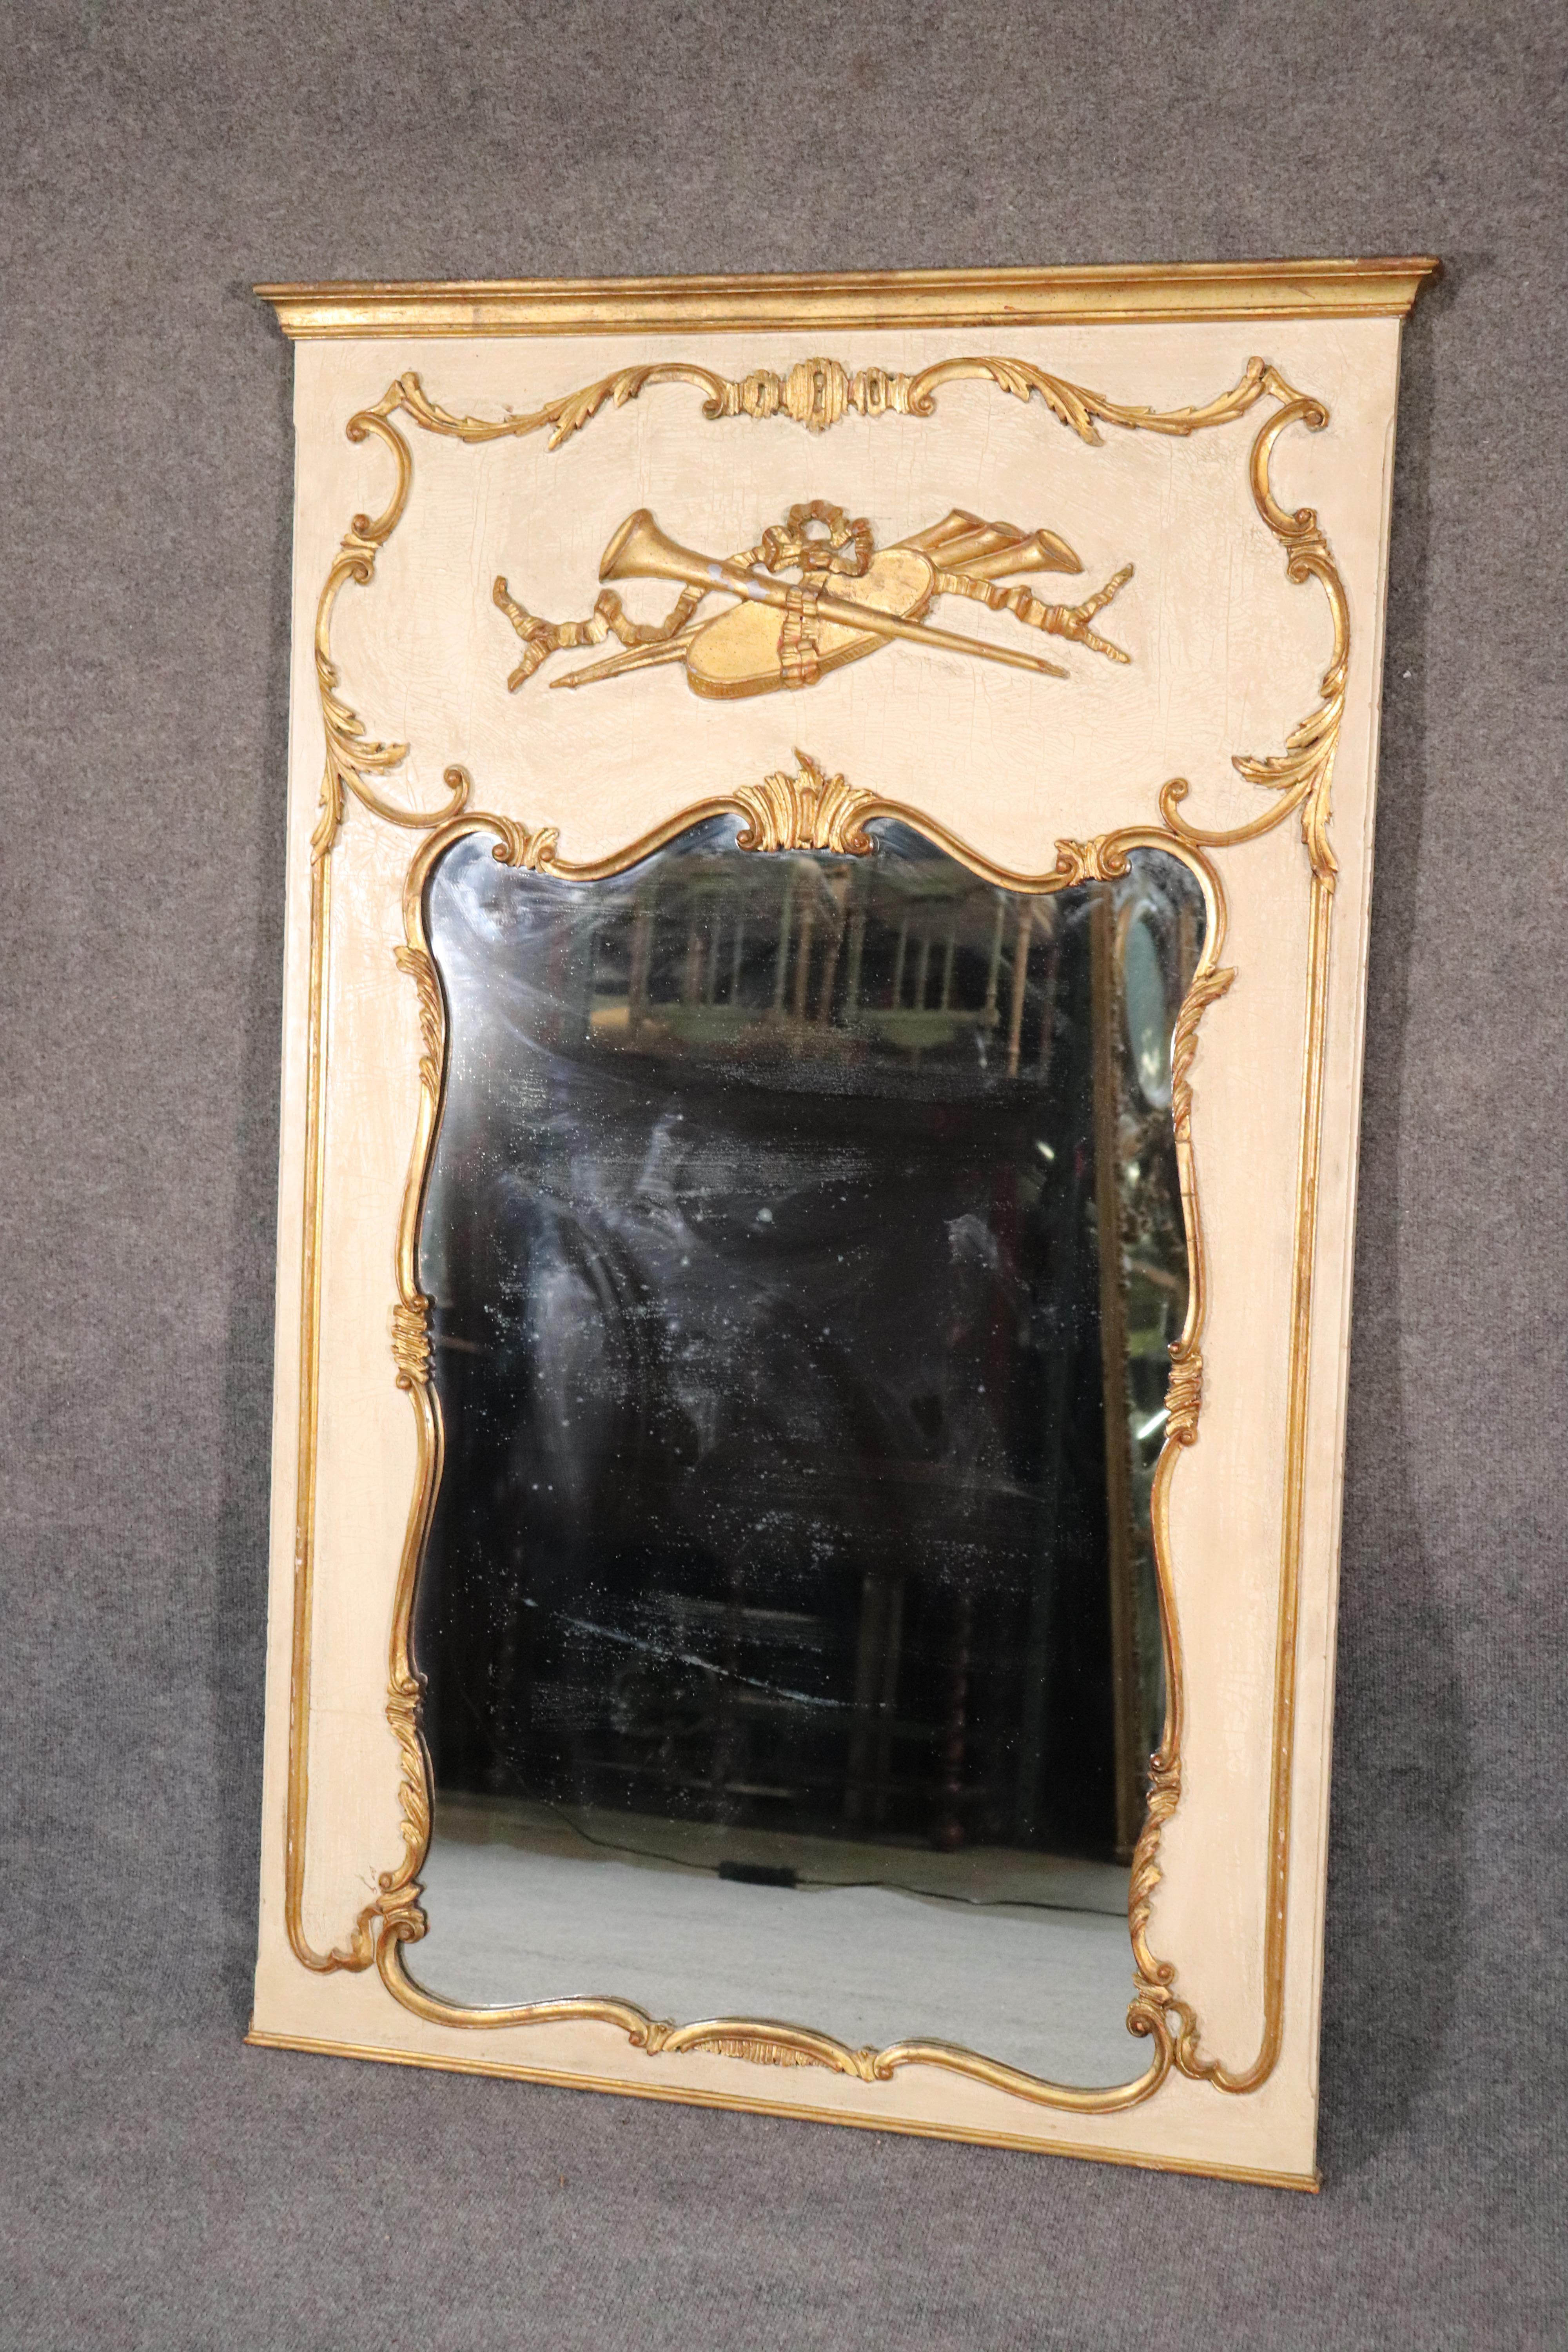 Dies ist eine wunderschöne italienische Französisch Louis XV Crème gemalt und Blattgold Spiegel gemacht. Der Spiegel ist in gutem Originalzustand. Der Spiegel misst 59 hoch x 38 breit x 2 Zoll tief.